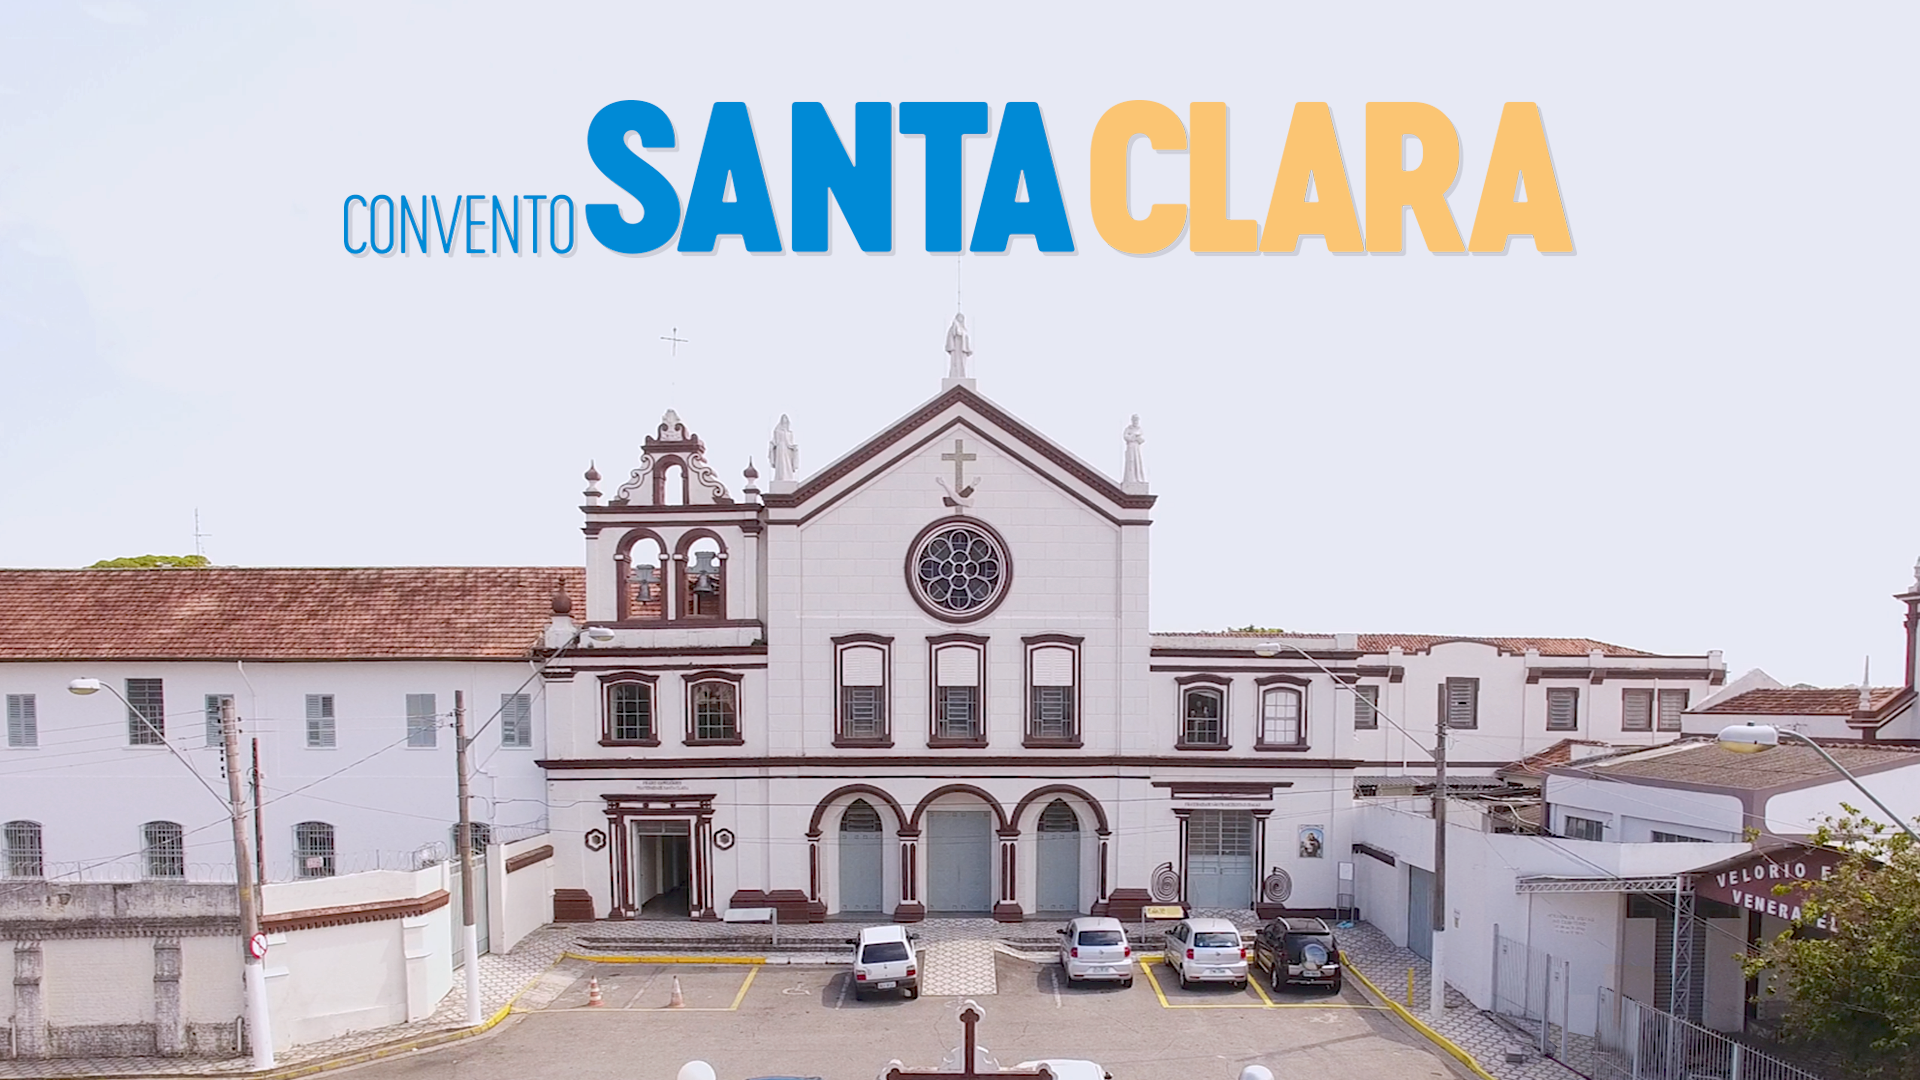 Convento Santa Clara - Revendo Taubaté - Rever Produções